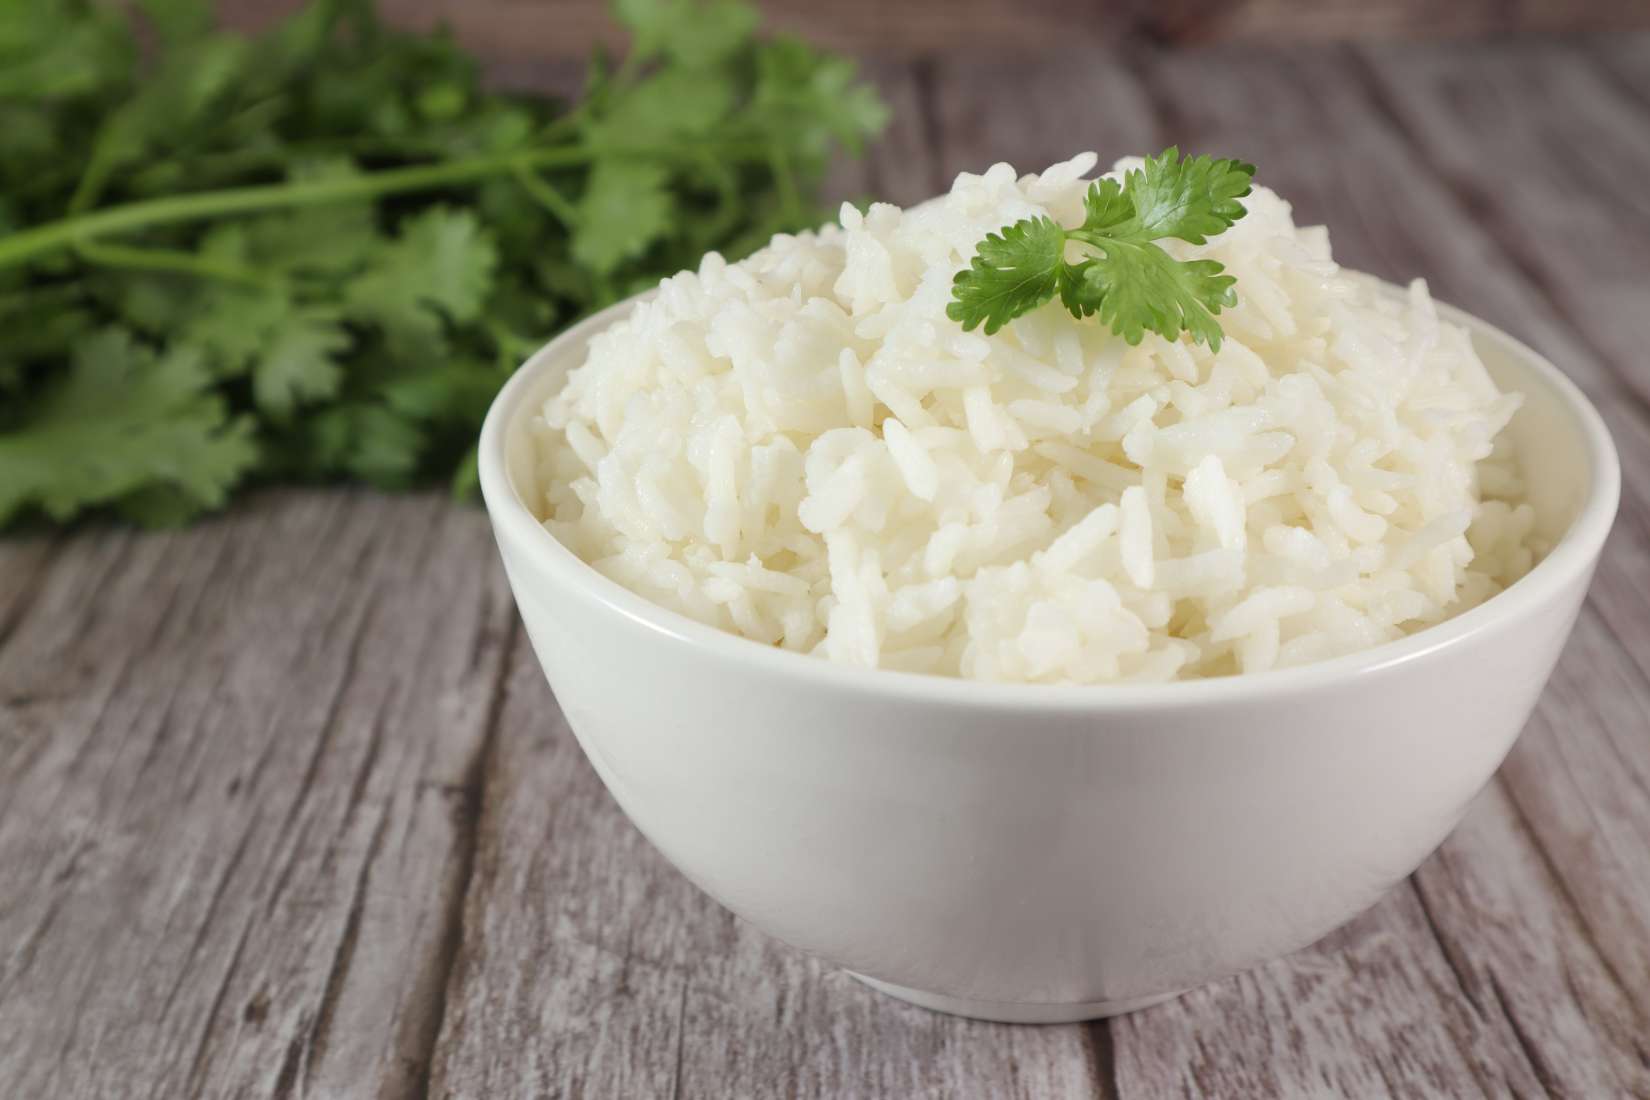 Contigo® Enriched Long Grain White Rice